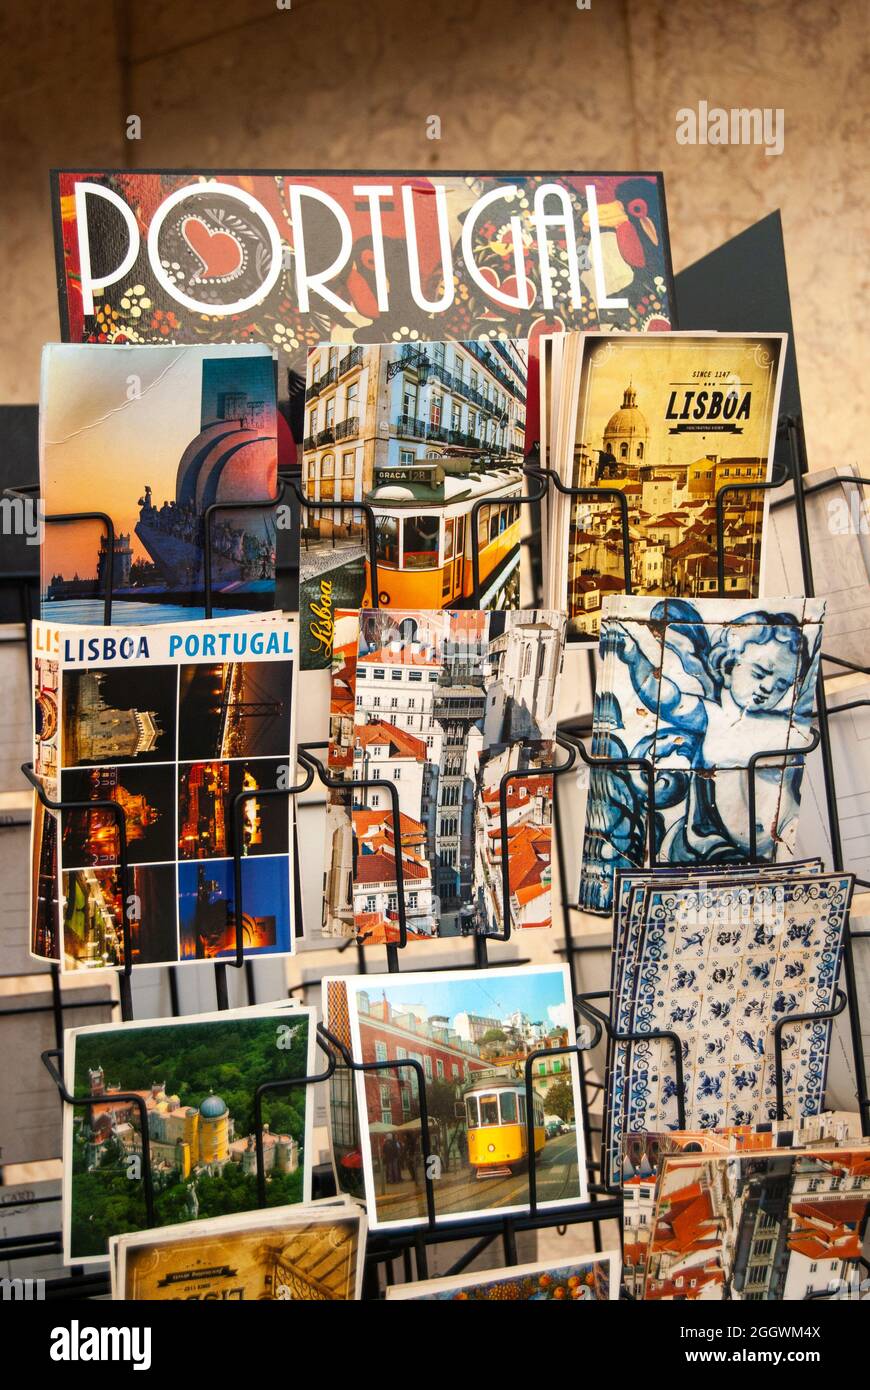 Lisbonne, Portugal - 29 juillet 2021 : un stand avec des cartes postales colorées avec des monuments et des lieux célèbres dans une rue de Lisbonne texte Lisbonne Portugal - Vertic Banque D'Images